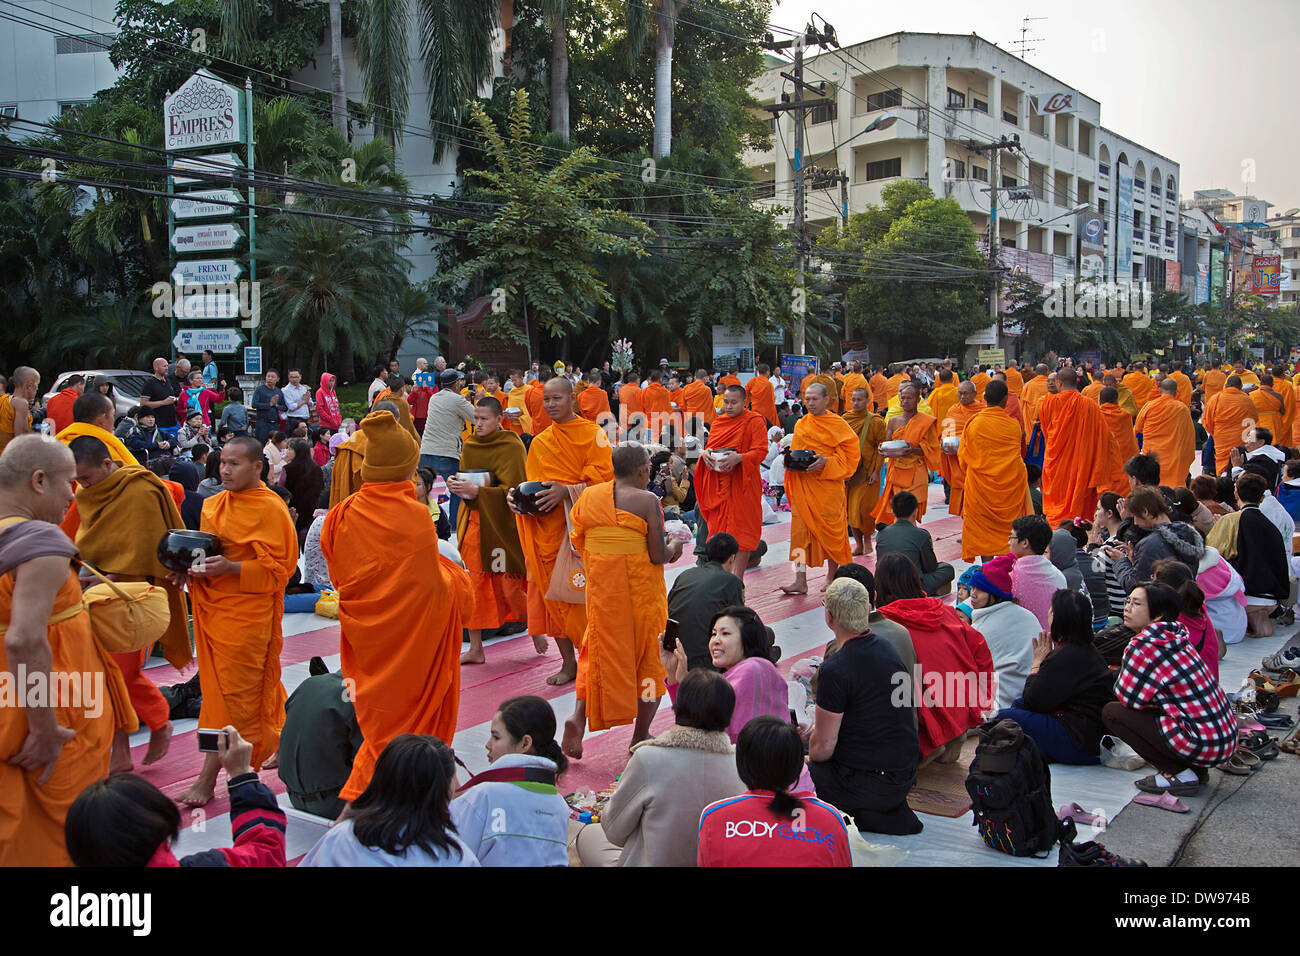 L'Aumône internationale offrant de 10 000 moines, Chang Klan Road, Chiang Mai, Thaïlande Banque D'Images